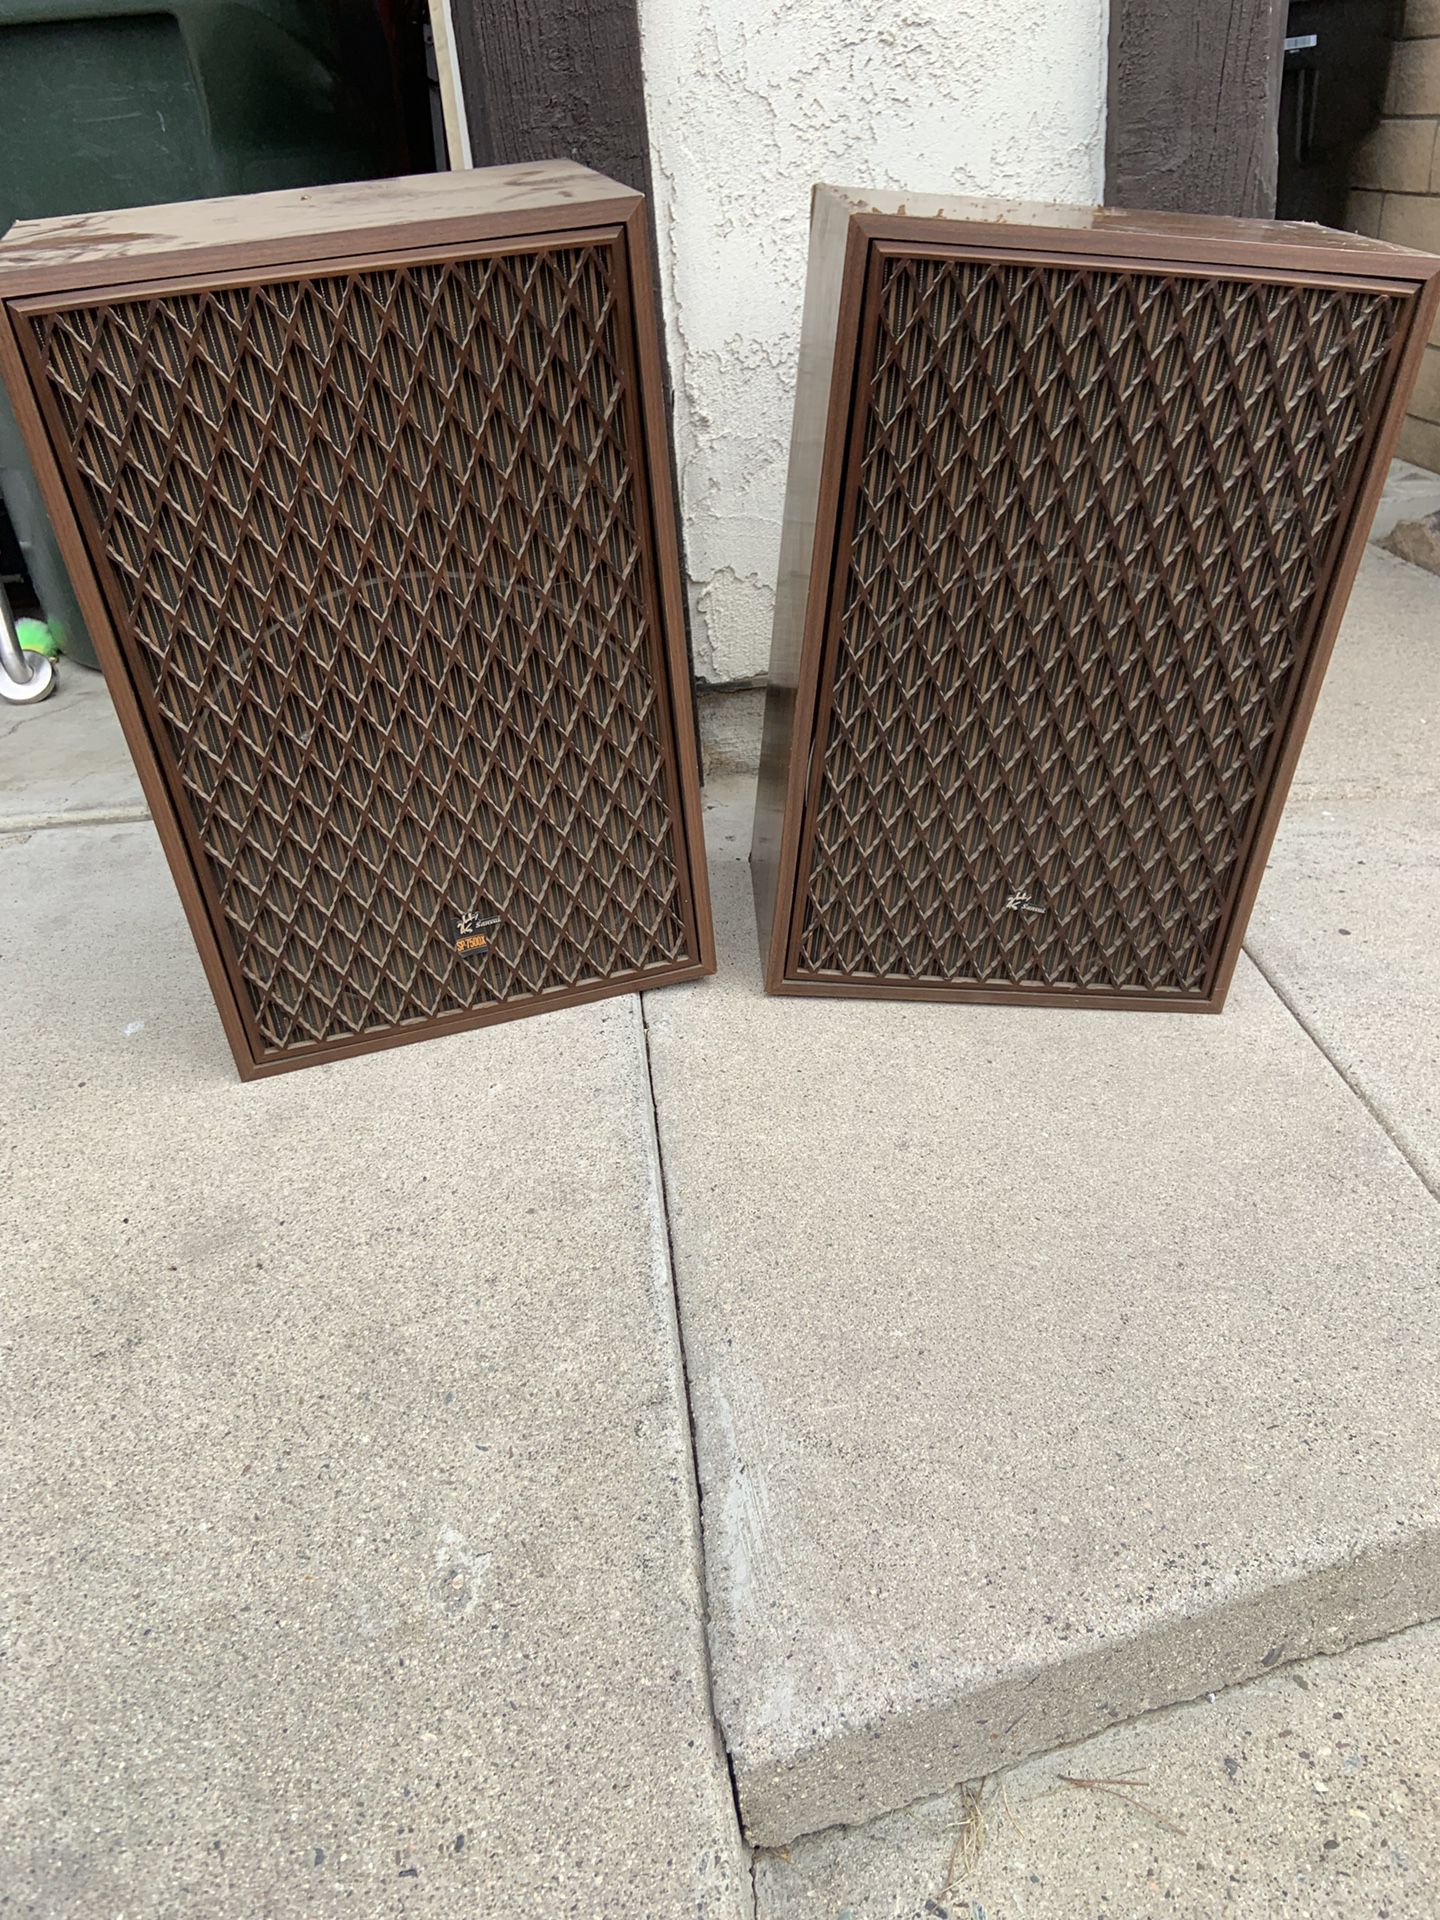 Sansui sp-7500x speakers